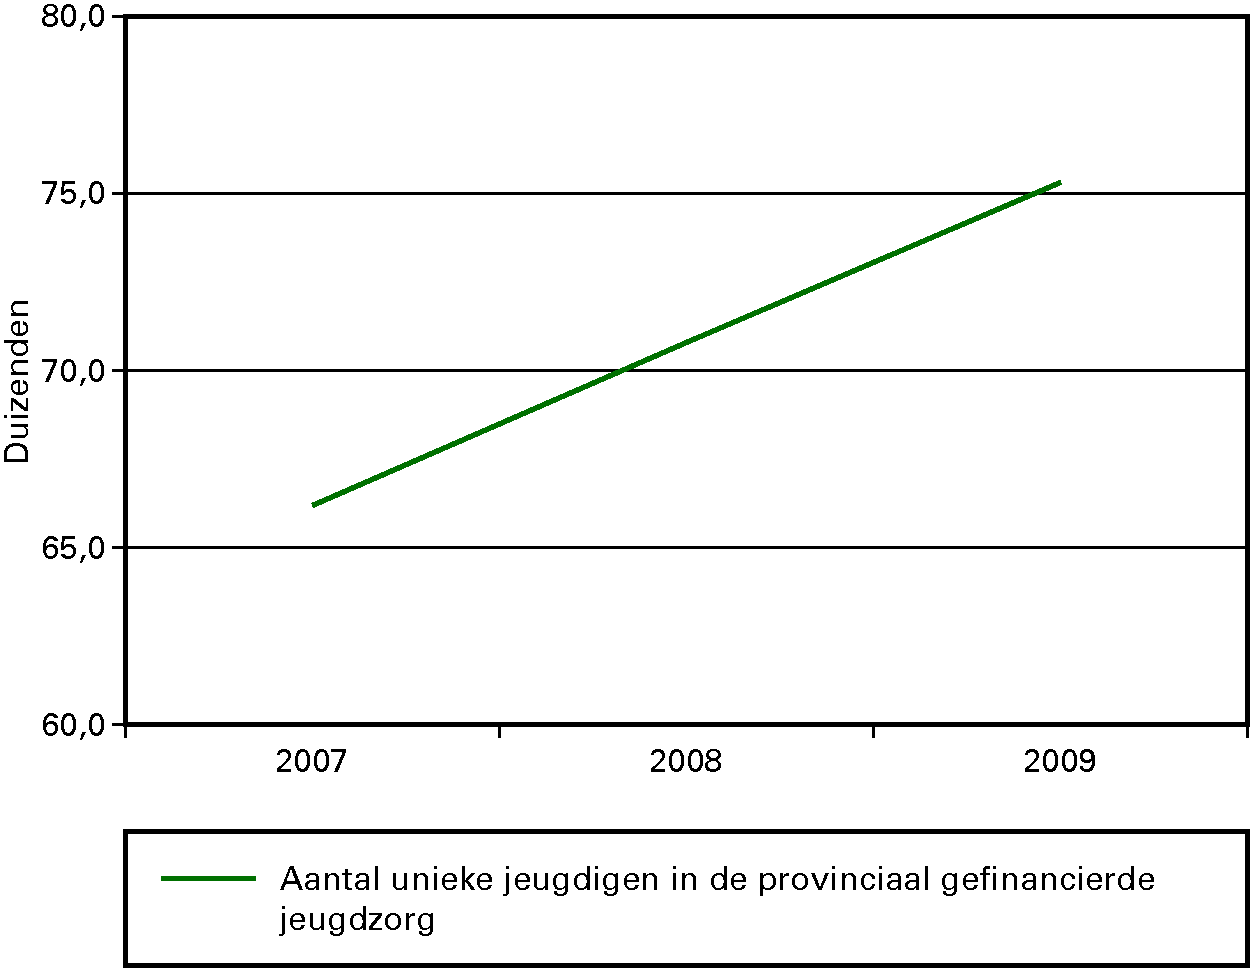 Kengetal aantal unieke jeugdigen in de provinciaal gefinancierde jeugdzorg